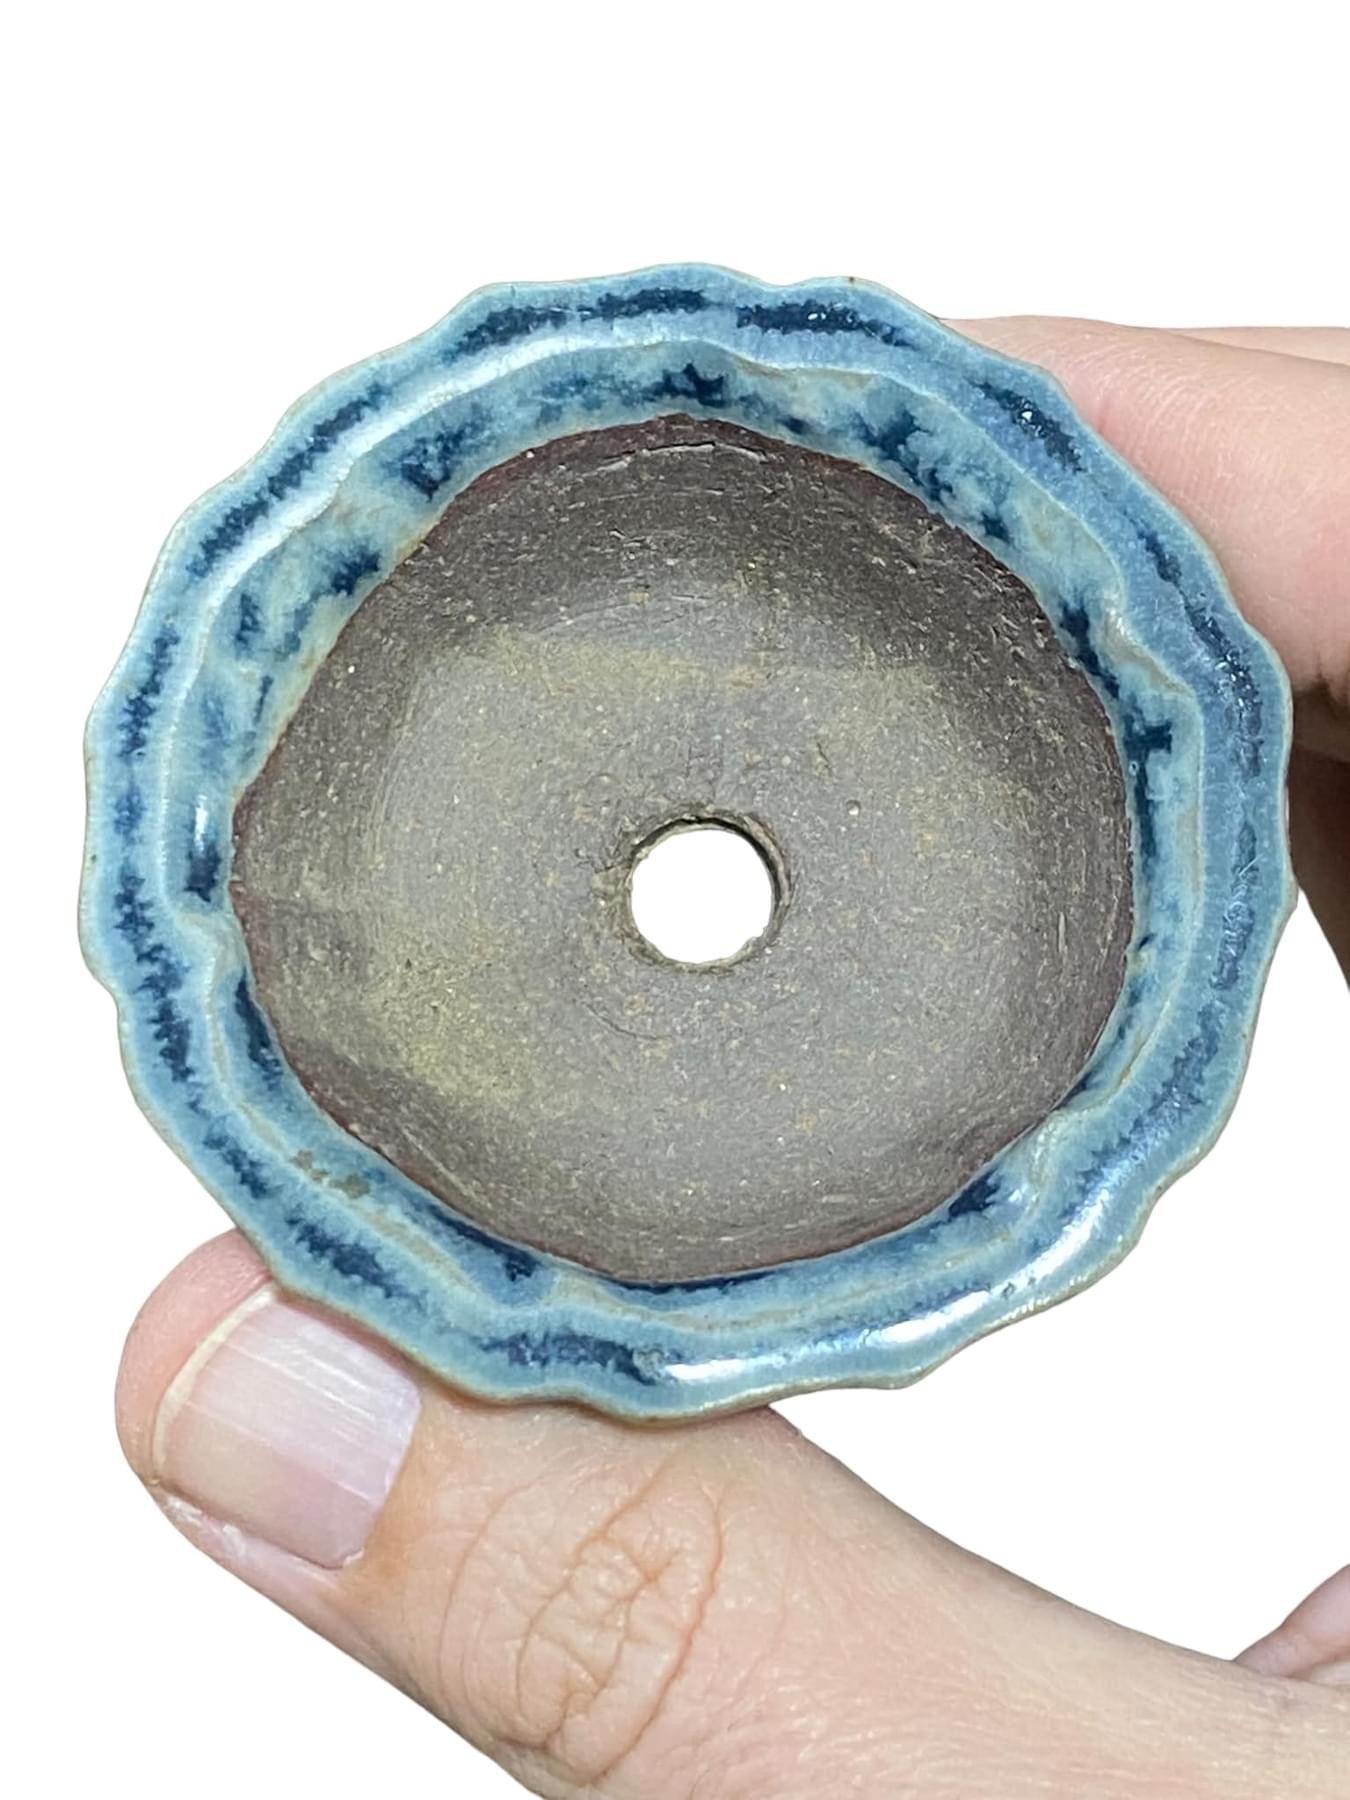 Shibakatsu - Blue Glazed Mame Bonsai Pot (Rare)